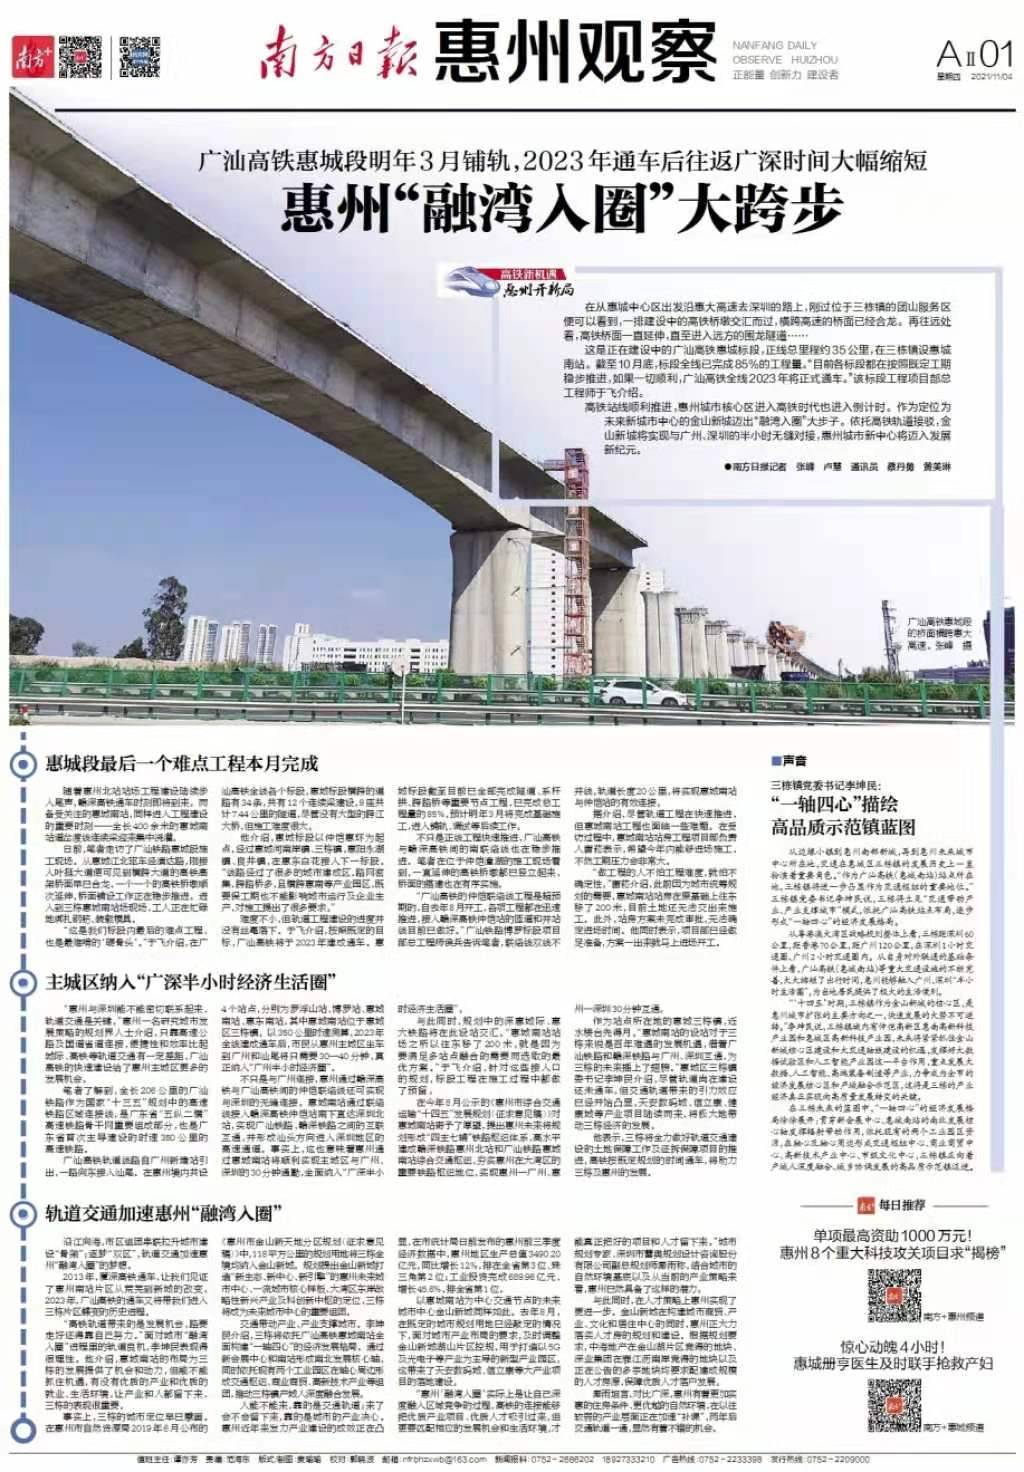 惠城南站为未来城市中心加持，惠州“融湾入圈”大跨步｜“高铁新机遇 惠州开新局”系列报道⑫